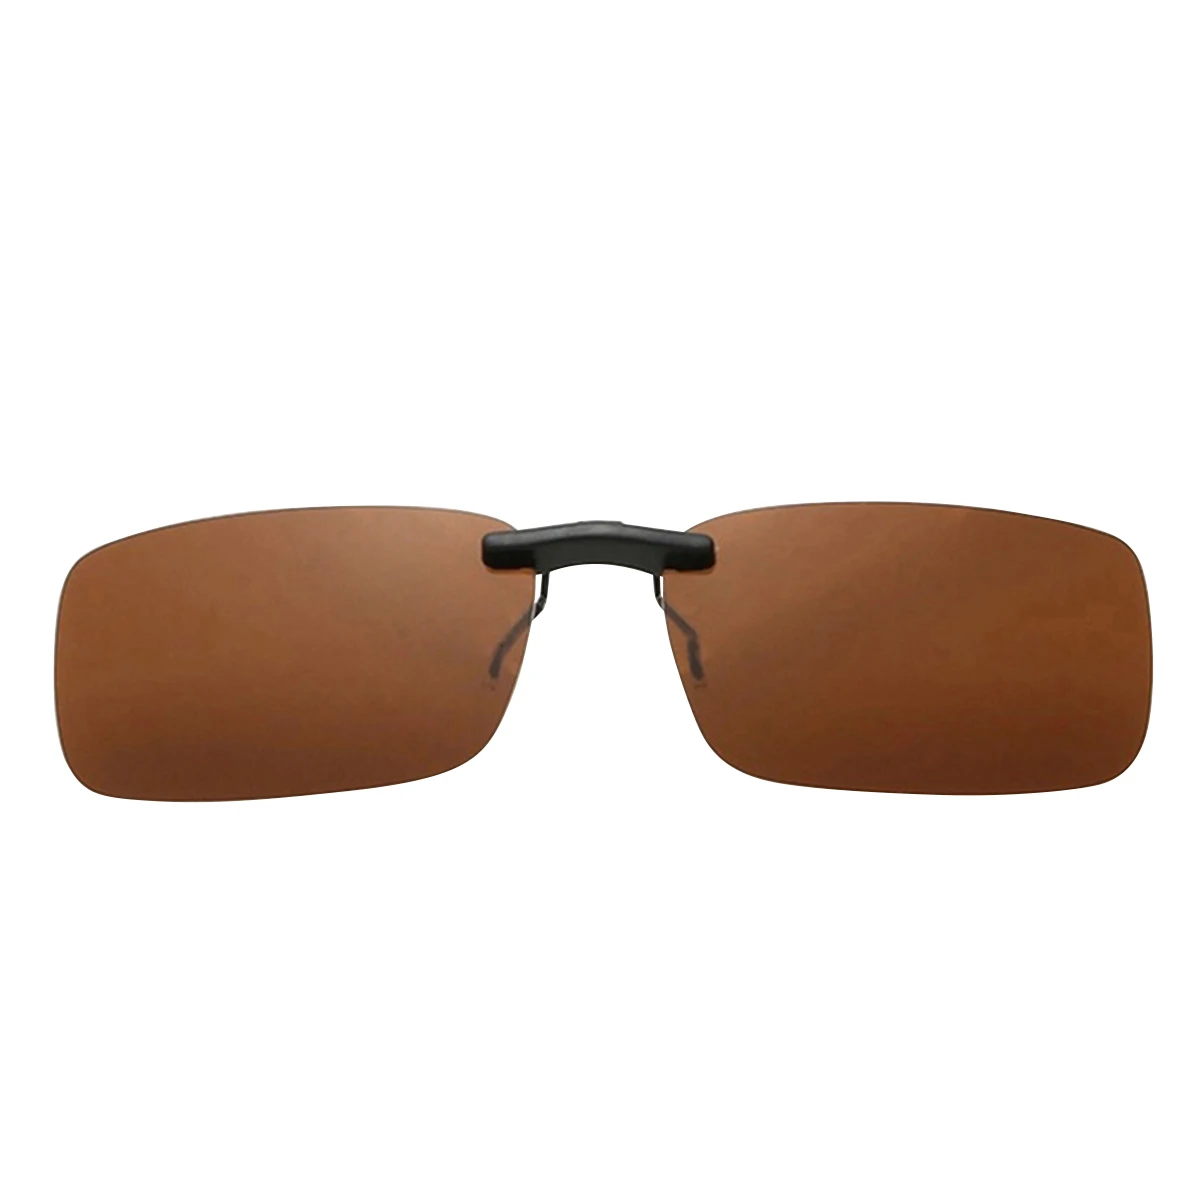 Унисекс, Ретро стиль, Поляризованные, на застежке, стильные солнцезащитные очки, UV400, флип, для рыбалки, очки ночного видения, для вождения, очки для близорукости, солнцезащитные очки - Цвет: Tawny